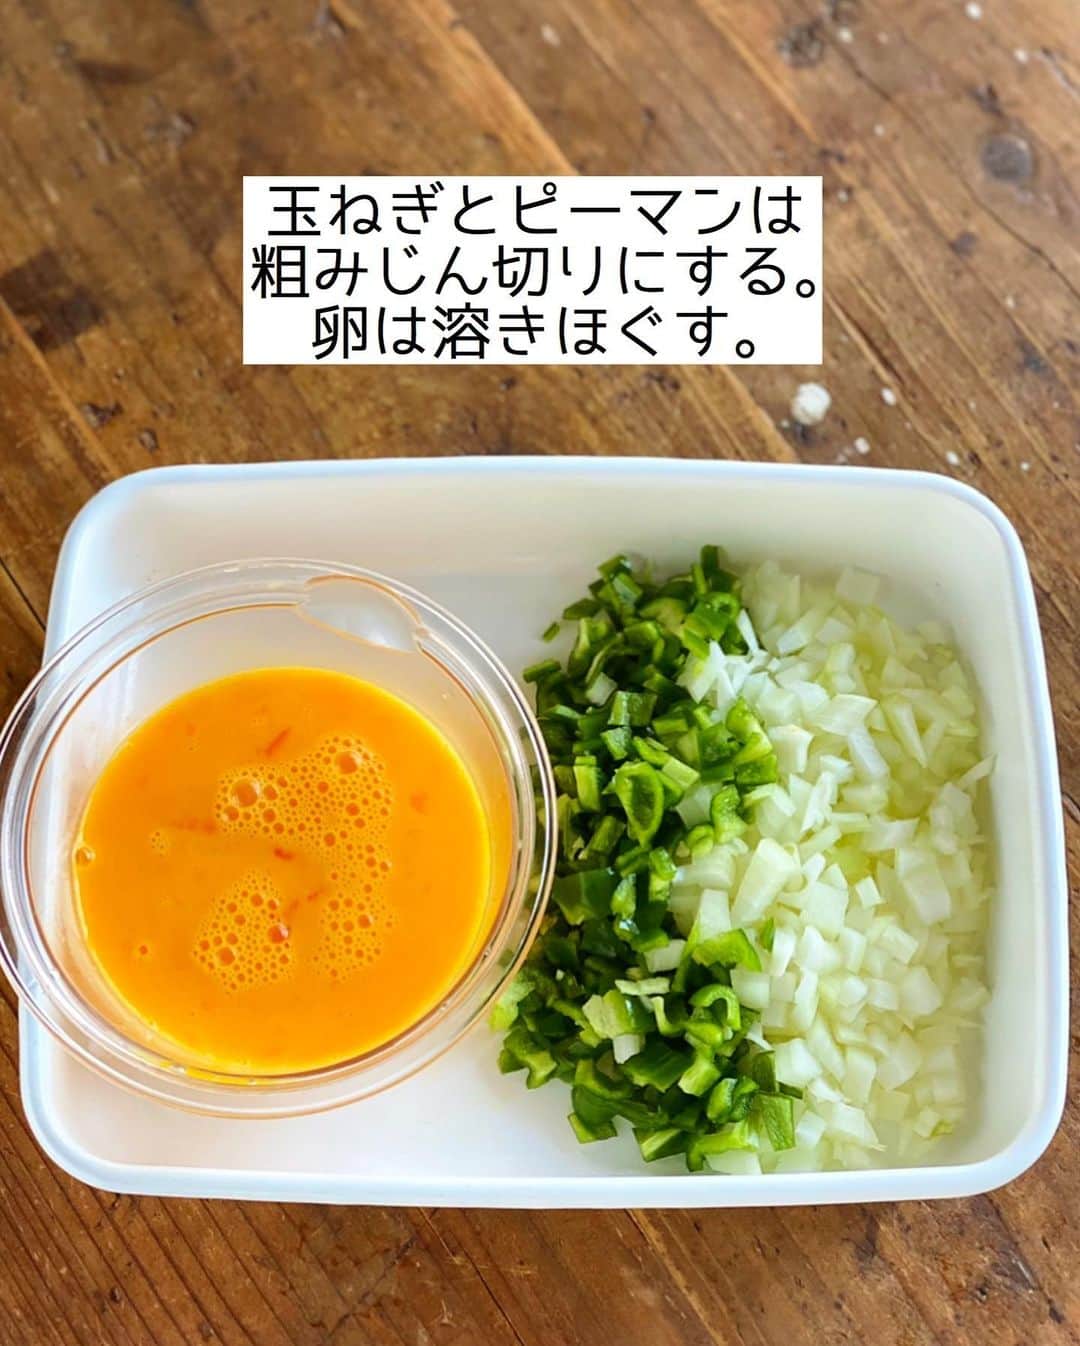 Mizuki【料理ブロガー・簡単レシピ】さんのインスタグラム写真 - (Mizuki【料理ブロガー・簡単レシピ】Instagram)「・﻿ 【#レシピ 】ーーーーーーーー﻿ ♡包まない！甘辛オムレツ♡﻿ ーーーーーーーーーーーーーー﻿ ﻿ ﻿ ﻿ おはようございます(*^^*)﻿ ﻿ 今日ご紹介させていただくのは﻿ \\包まない甘辛オムレツ// ﻿ ﻿ 甘辛く炒めた具を﻿ 卵でとじて形を整えるだけ！﻿ の、超簡単レシピです♡﻿ ひとつずつ包むより格段に手軽で﻿ 多少形が崩れても問題なし(*´艸`)﻿ フライパンひとつで﻿ あっという間に作れますよ〜♩﻿ ﻿ 甘辛味にケチャップが合うので﻿ よかったらお試し下さいね(*^^*)﻿ ﻿ ﻿ ﻿ ＿＿＿＿＿＿＿＿＿＿＿＿＿＿＿＿＿＿＿＿﻿ 【2人分】﻿ 豚ひき肉...150g﻿ 玉ねぎ...1/2個﻿ ピーマン...2個﻿ 卵...3個﻿ サラダ油...小2﻿ ●砂糖・醤油...各大1﻿ ●塩こしょう...少々﻿ ケチャップ...適量﻿ ﻿ 1.玉ねぎとピーマンは粗みじん切りにする。卵は溶きほぐす。﻿ 2.フライパンにサラダ油を中火で熱し、ひき肉、玉ねぎ、ピーマンを炒め、火が通ったら●を加えて煮からめる。﻿ 3.強火にし、溶き卵を流し入れて大きく混ぜ、半熟になったら端に寄せて形を整える。﻿ 4.ひっくり返して器に盛り、ケチャップをかける。﻿ ￣￣￣￣￣￣￣￣￣￣￣￣￣￣￣￣￣￣￣￣﻿ ﻿ ﻿ ﻿ 《ポイント》﻿ ♦︎合挽き肉、鶏ひき肉で作っても♩﻿ ♦︎卵にしっかり火を通したい場合は、形を整えてから蓋をして弱火で蒸し焼きにしても♩﻿ ♦︎私は24cmのフライパンを使用しています♩﻿ ﻿ ﻿ ﻿ ﻿ ﻿ ﻿ ﻿ ﻿ ﻿ 📕新刊予約開始しました📕﻿ 【ラクしておいしい！#1品晩ごはん 】﻿ ￣￣￣￣￣￣￣￣￣￣￣￣￣￣￣￣￣﻿ 私たちだってヘトヘトな日がある•••﻿ 毎日何品も作っていられない•••﻿ もうごはんに悩みたくない😢﻿ そう思うことってありませんか？﻿ そんな時、1品ごはんはいかがでしょう？﻿ というご提案です✨﻿ ﻿ ﻿ 【1品ごはん】は﻿ 副菜いらずで全てがシンプル！﻿ ￣￣￣￣￣￣￣￣￣￣￣￣￣￣￣￣￣￣﻿ 一品つくるだけでいいから﻿ 献立を考えなくてよし！﻿ ￣￣￣￣￣￣￣￣￣￣￣￣￣￣￣￣￣￣﻿ 悩まない、疲れない、﻿ 気力や時間がなくてもなんとかなる！﻿ ￣￣￣￣￣￣￣￣￣￣￣￣￣￣￣￣￣￣﻿ そんな頼りになる﻿ 便利なお助けごはんです☺️💕﻿ (ハイライトに🔗貼っています✨)﻿ ￣￣￣￣￣￣￣￣￣￣￣￣￣￣￣￣￣﻿ ﻿ ﻿ ﻿ ﻿ ﻿ ⭐️発売中⭐️﻿ ＿＿＿＿＿＿＿＿＿＿＿＿＿＿＿＿＿＿﻿ しんどくない献立、考えました♩﻿ \15分でいただきます/﻿ 📕#Mizukiの2品献立 📕﻿ ﻿ 和食をもっとカジュアルに♩﻿ \毎日のごはんがラクになる/﻿ 📘#Mizukiの今どき和食 📘﻿ ﻿ ホケミレシピの決定版♩﻿ \はじめてでも失敗しない/﻿ 📙#ホットケーキミックスのお菓子 📙﻿ ﻿ NHKまる得マガジンテキスト☆﻿ ホットケーキミックスで﻿ 📗絶品おやつ&意外なランチ📗﻿ ￣￣￣￣￣￣￣￣￣￣￣￣￣￣￣￣￣￣﻿ ﻿ ﻿ ﻿ ＿＿＿＿＿＿＿＿＿＿＿＿＿＿＿＿＿＿﻿ レシピを作って下さった際や﻿ レシピ本についてのご投稿には﻿ タグ付け( @mizuki_31cafe )して﻿ お知らせいただけると嬉しいです😊💕﻿ ￣￣￣￣￣￣￣￣￣￣￣￣￣￣￣￣￣￣﻿ ﻿ ﻿ ﻿ ﻿ #オムレツ#包まない#ひき肉# #Mizuki#簡単レシピ#時短レシピ#節約レシピ#料理#フーディーテーブル#マカロニメイト#おうちごはん#デリスタグラマー#料理好きな人と繋がりたい#食べ物#料理記録#おうちごはんlover#写真好きな人と繋がりたい#foodpic#cooking#recipe#lin_stagrammer#foodporn#yummy#甘辛オムレツm」12月11日 7時02分 - mizuki_31cafe